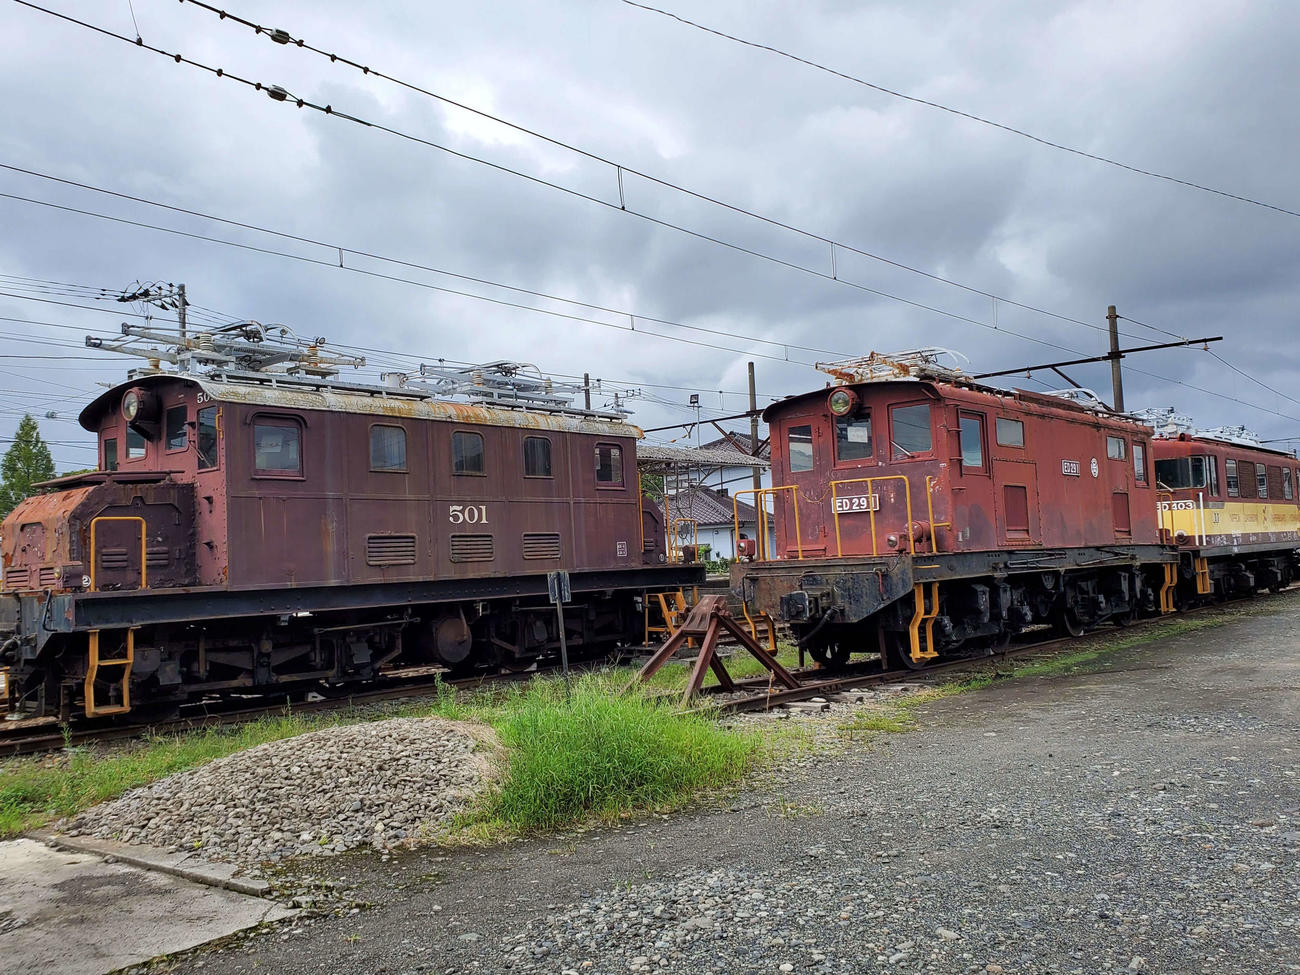 〈10〉岳南富士岡駅にはかつて活躍した機関車が留置、展示されている